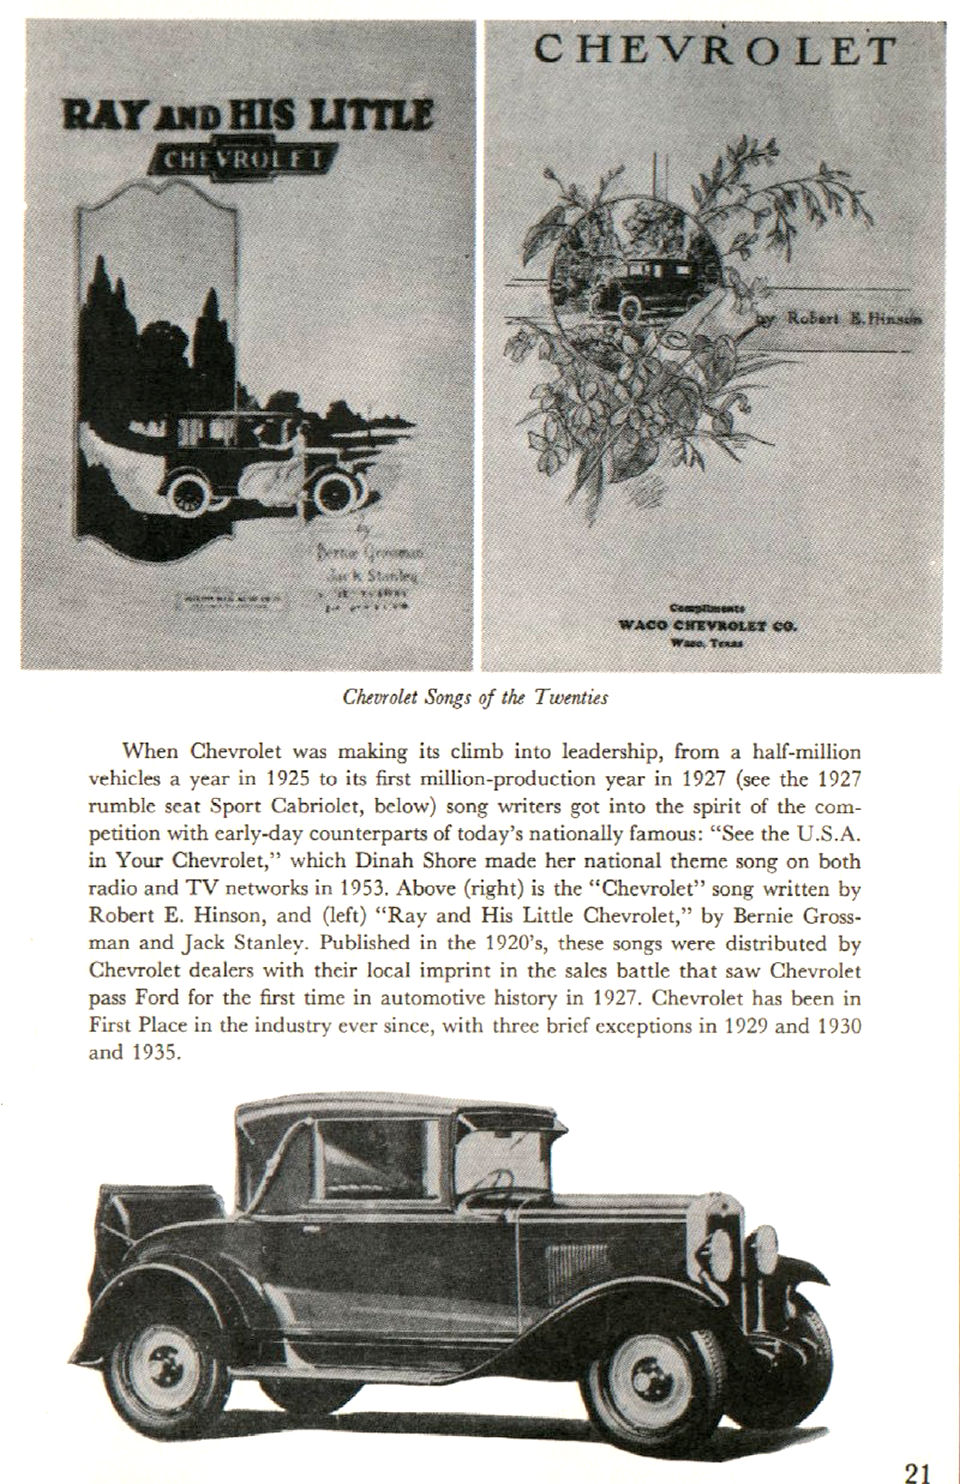 1955_Chevrolet_Story-21